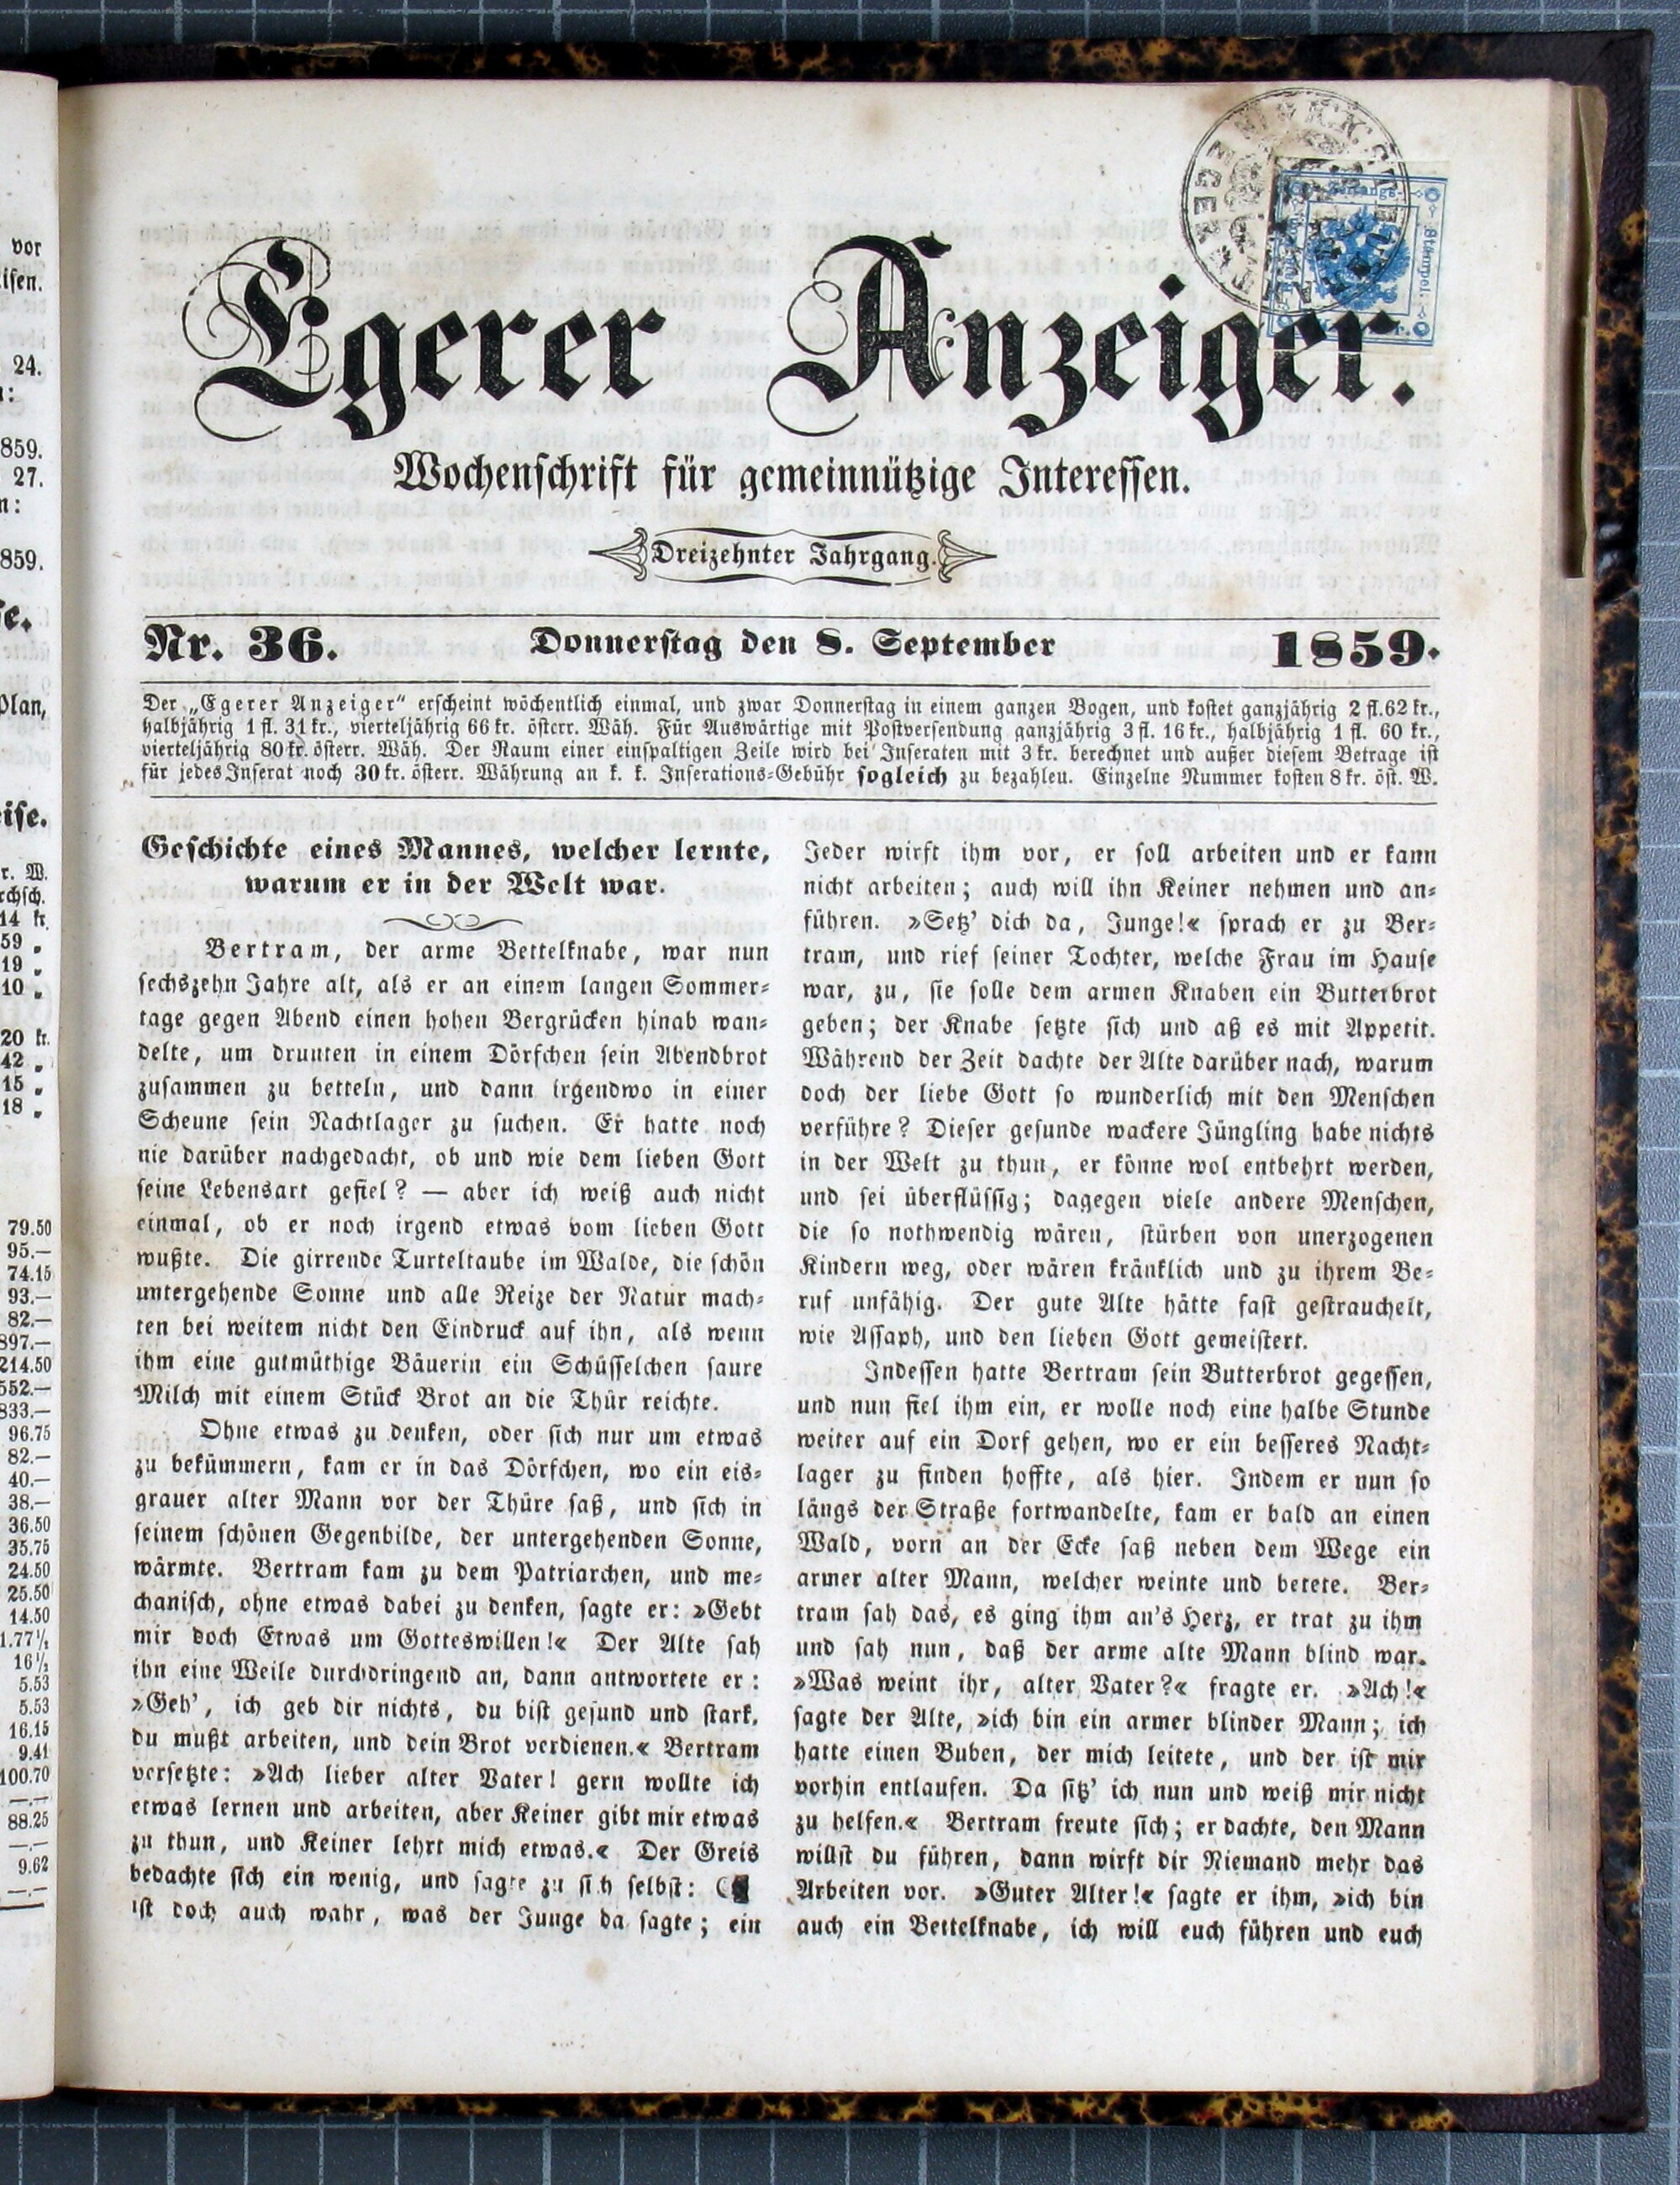 1. egerer-anzeiger-1859-09-08-n36_1435